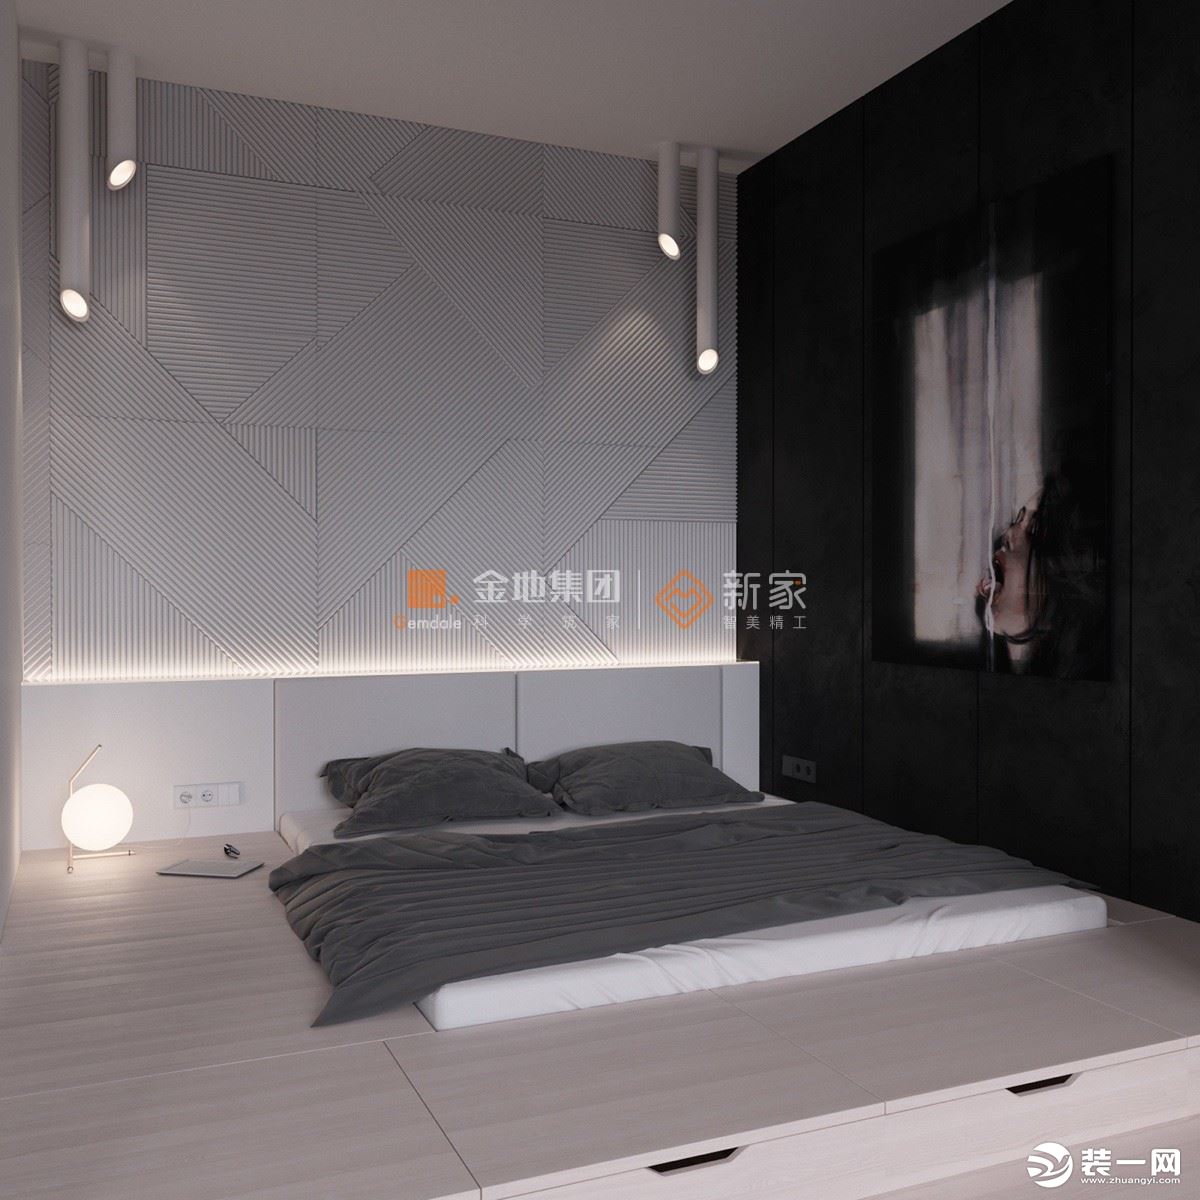 卧室：卧室延续空间的极简风格，隐藏式床头灯带瞬间点亮空间，几何图案墙与柱形灯打破空间沉闷，恬静舒适